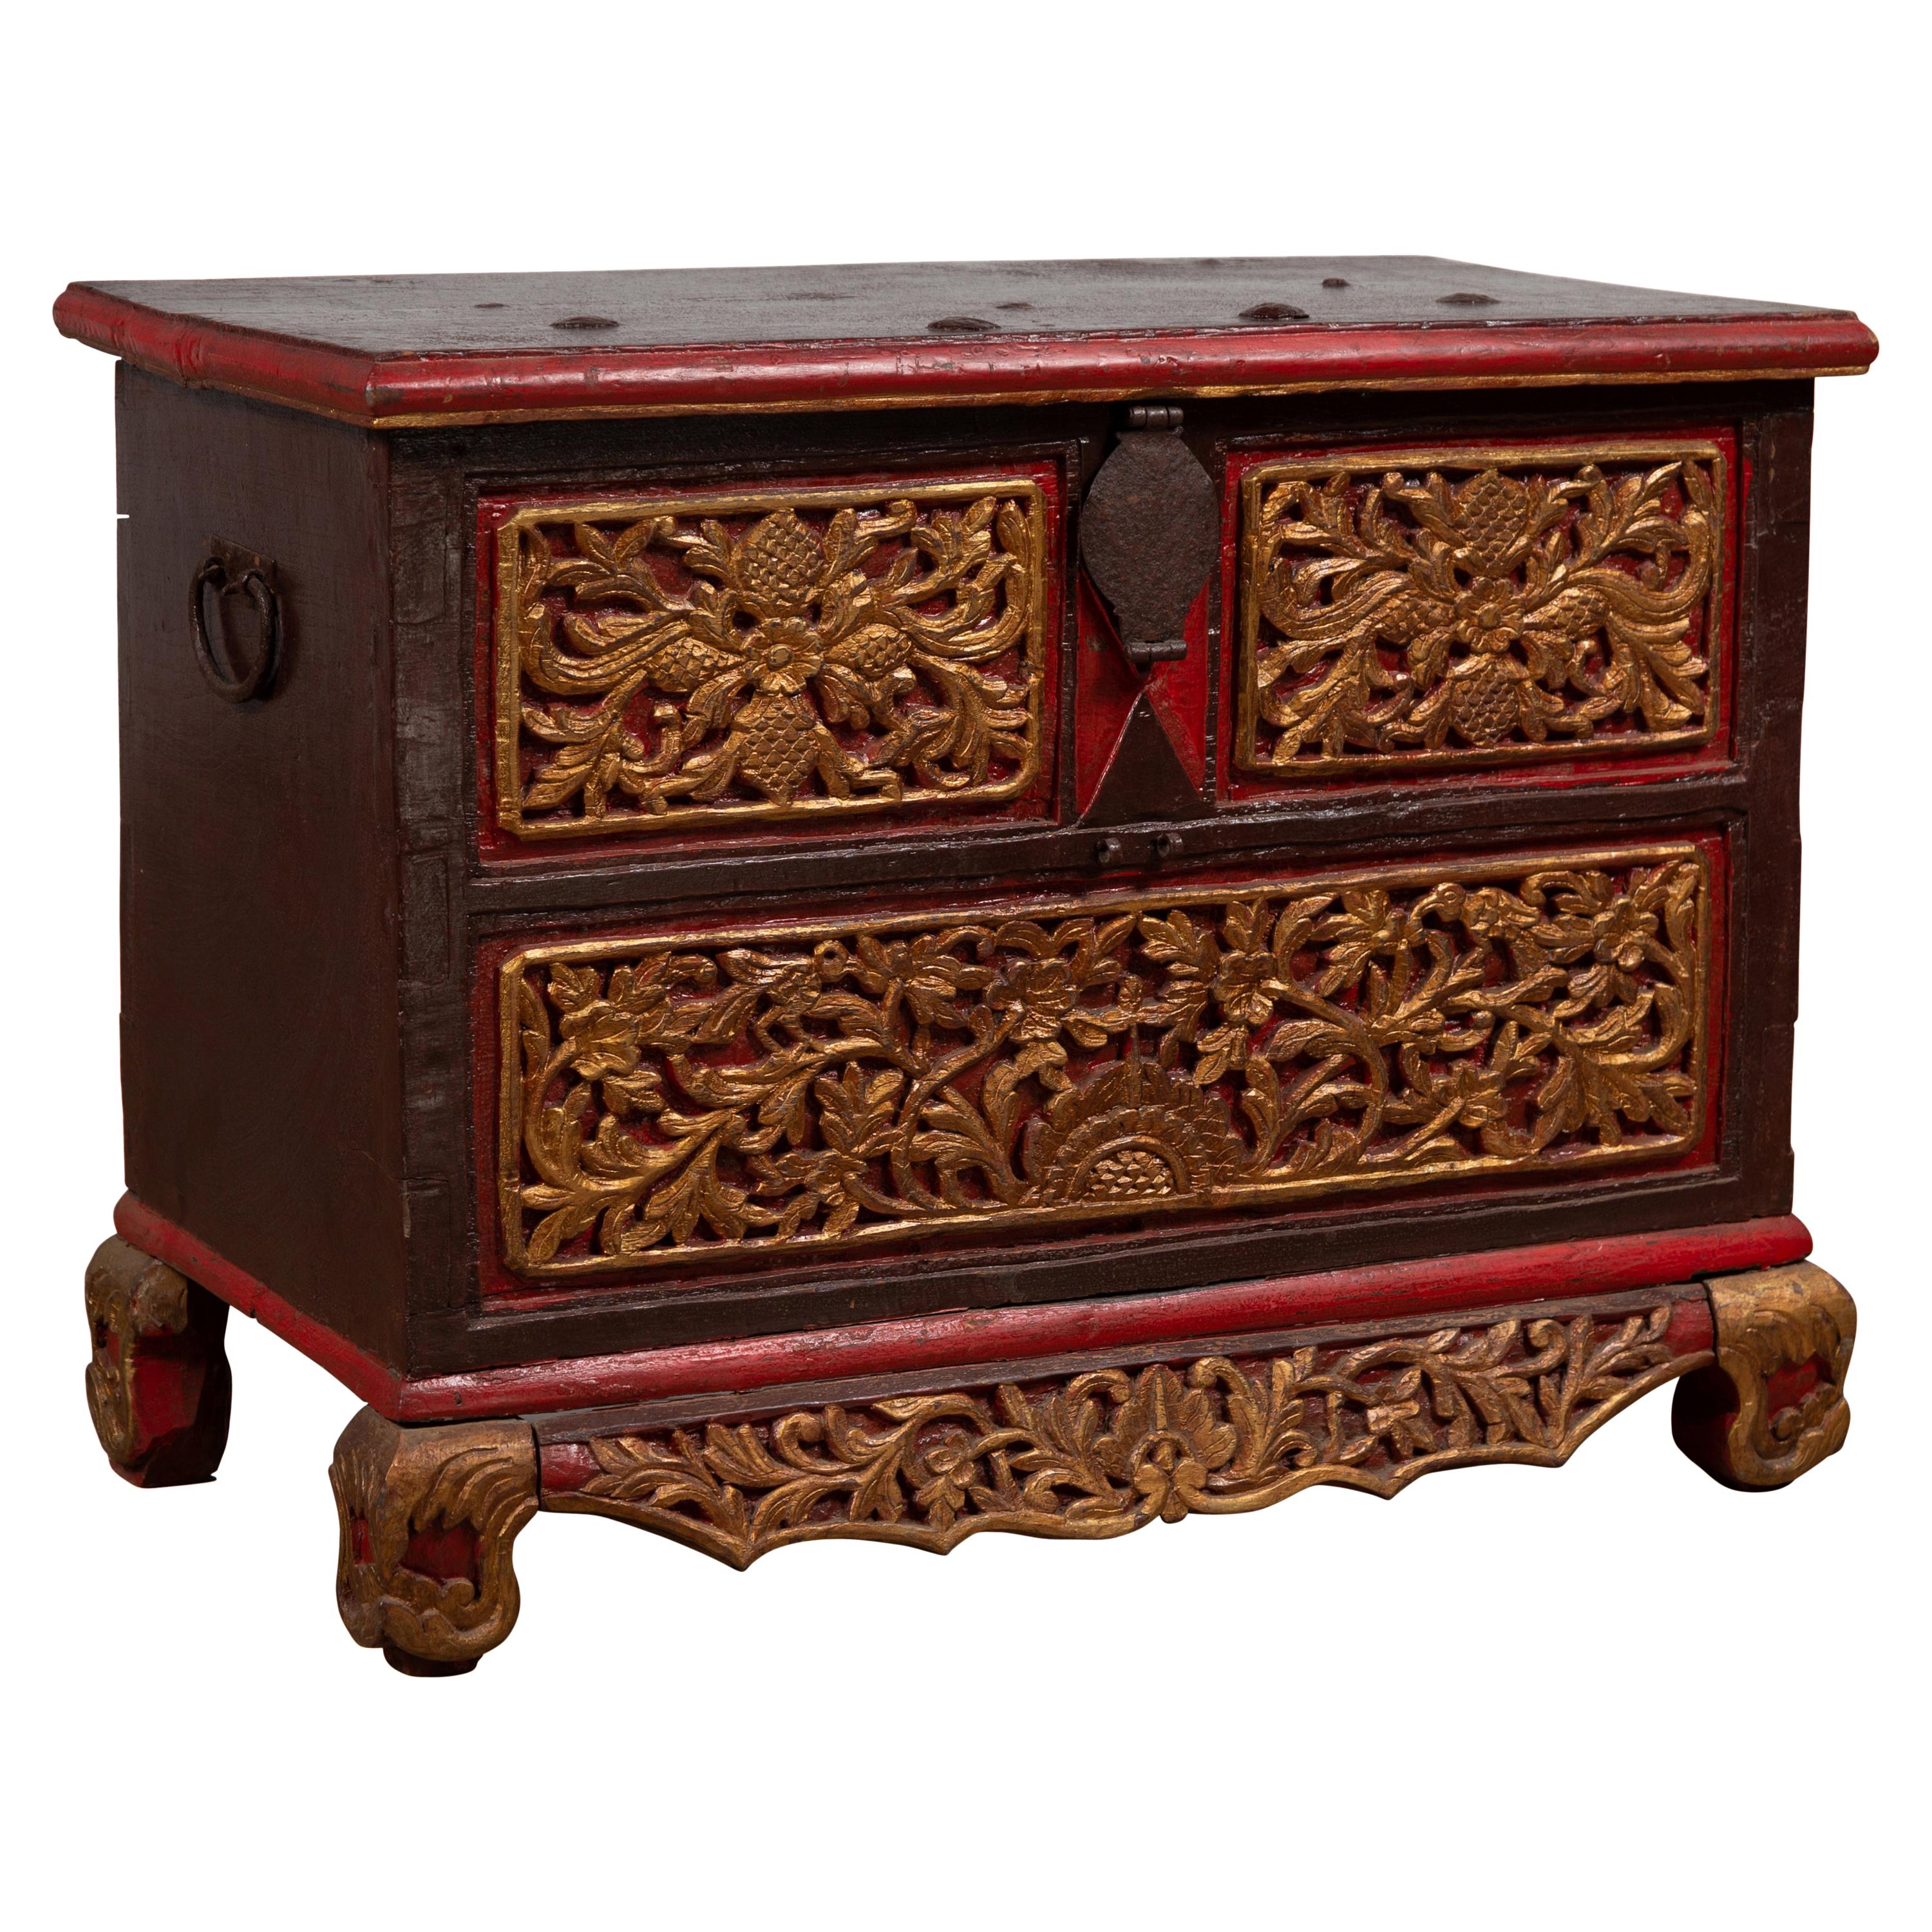 Coffre à couvertures antique en bois sculpté à la main de Madura avec des accents rouges, Brown et dorés en vente